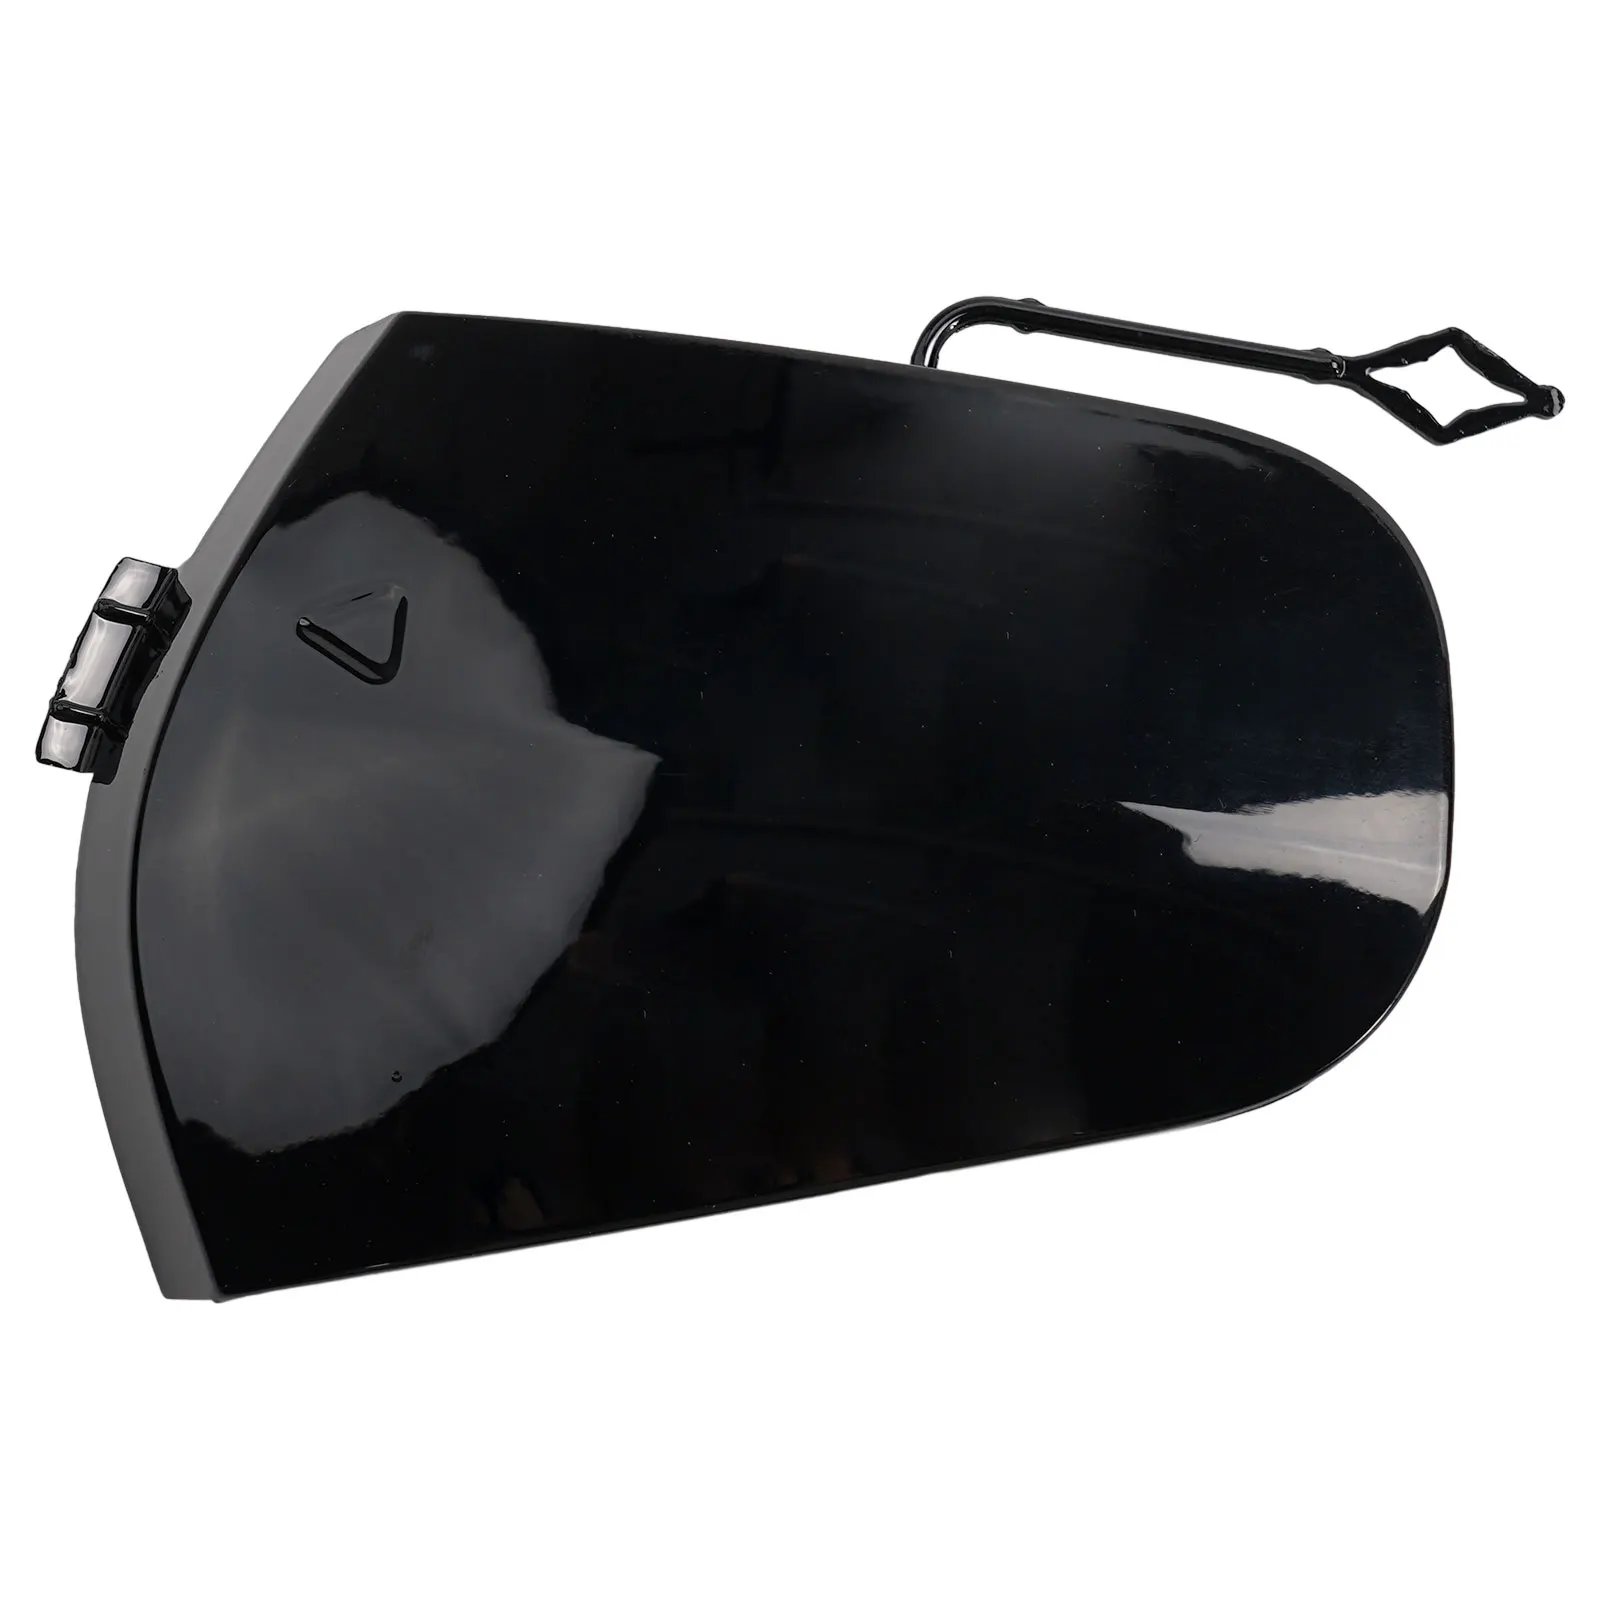 Çekme Kancası Göz Kapağı Mükemmel Tasarlanmış Parlak Siyah Ön Tampon Kapağı Çekme Kancası Gözü ile MİNİ Clubman için F54-Kurulumu Kolay